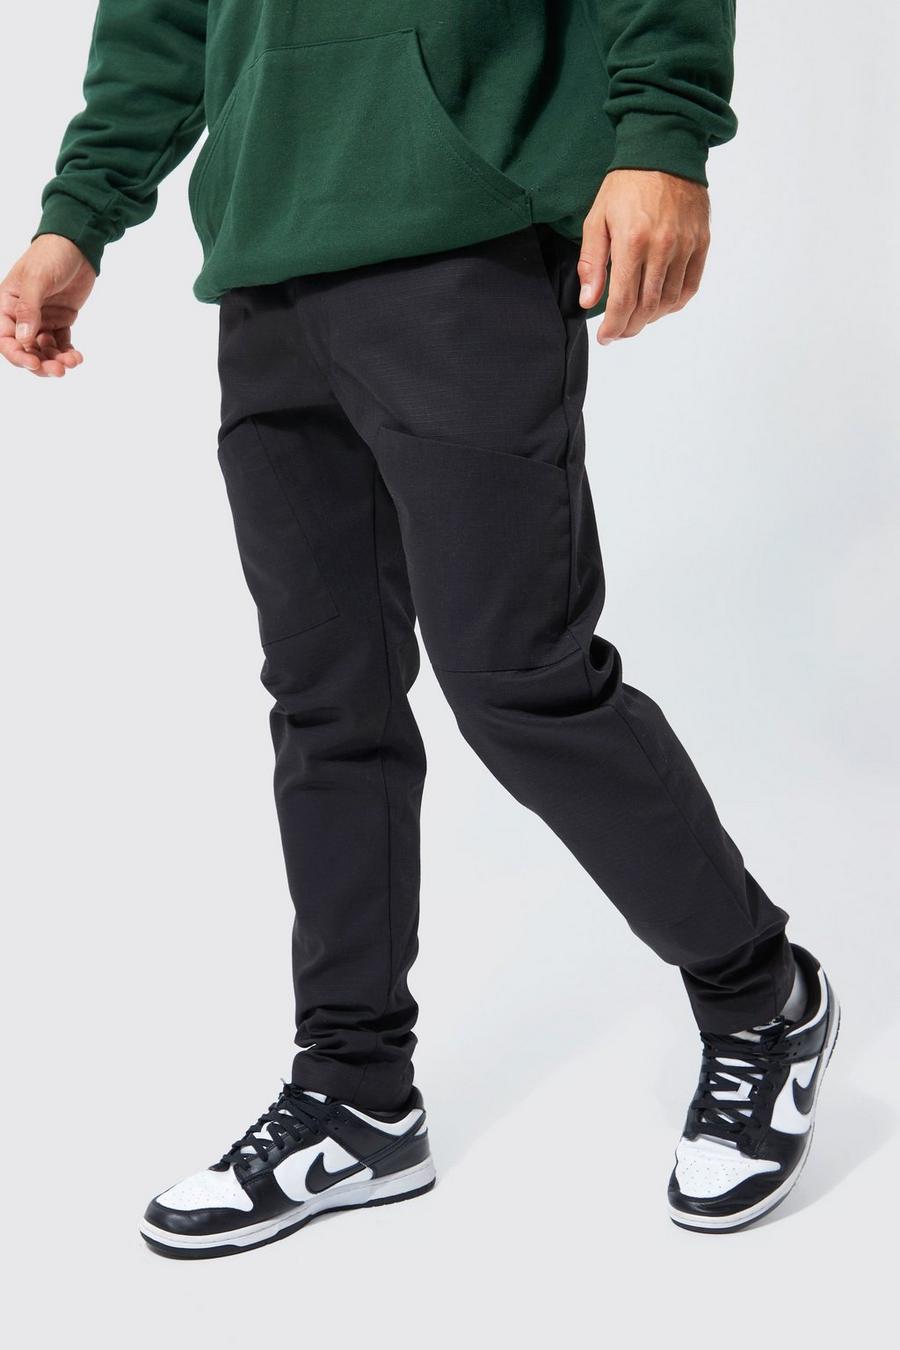 Pantaloni Cargo Slim Fit in twill e nylon ripstop, Black